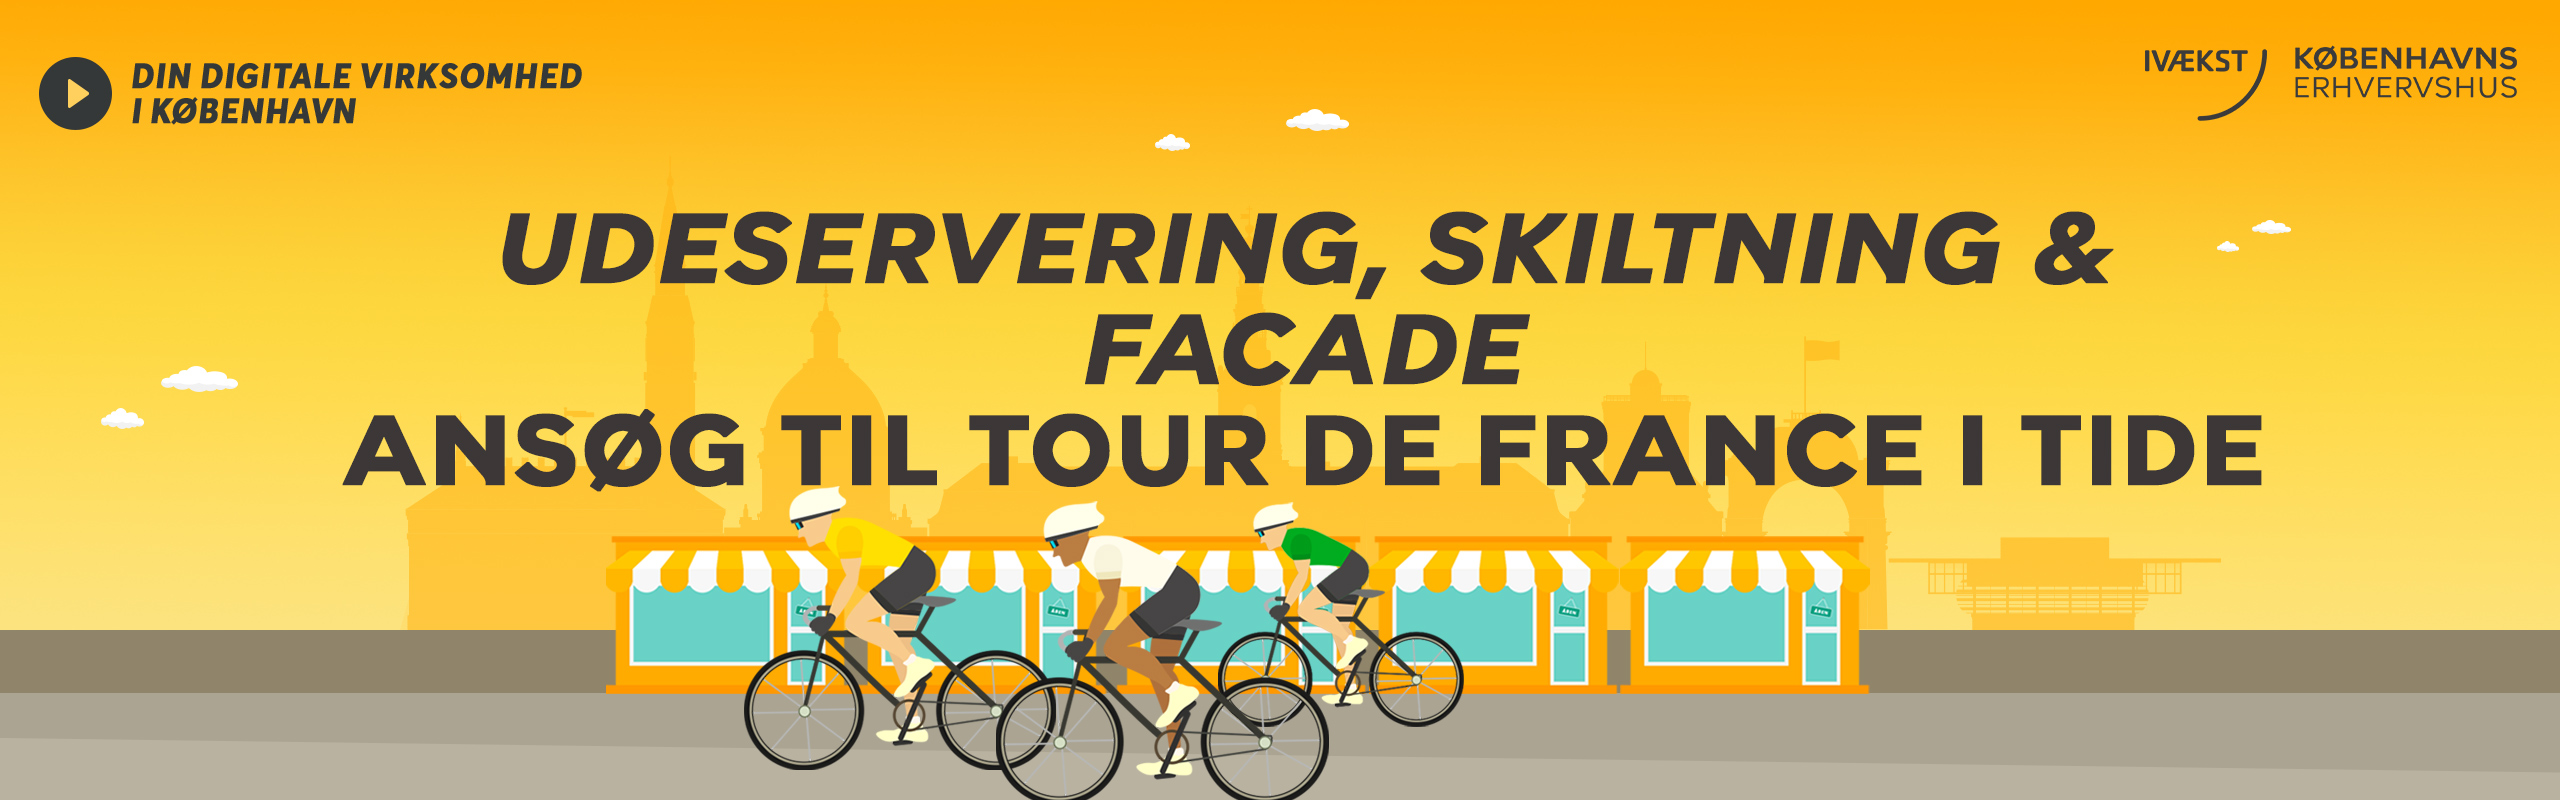 Udeservering, skiltning og facade - ansøg i tide til Tour de France